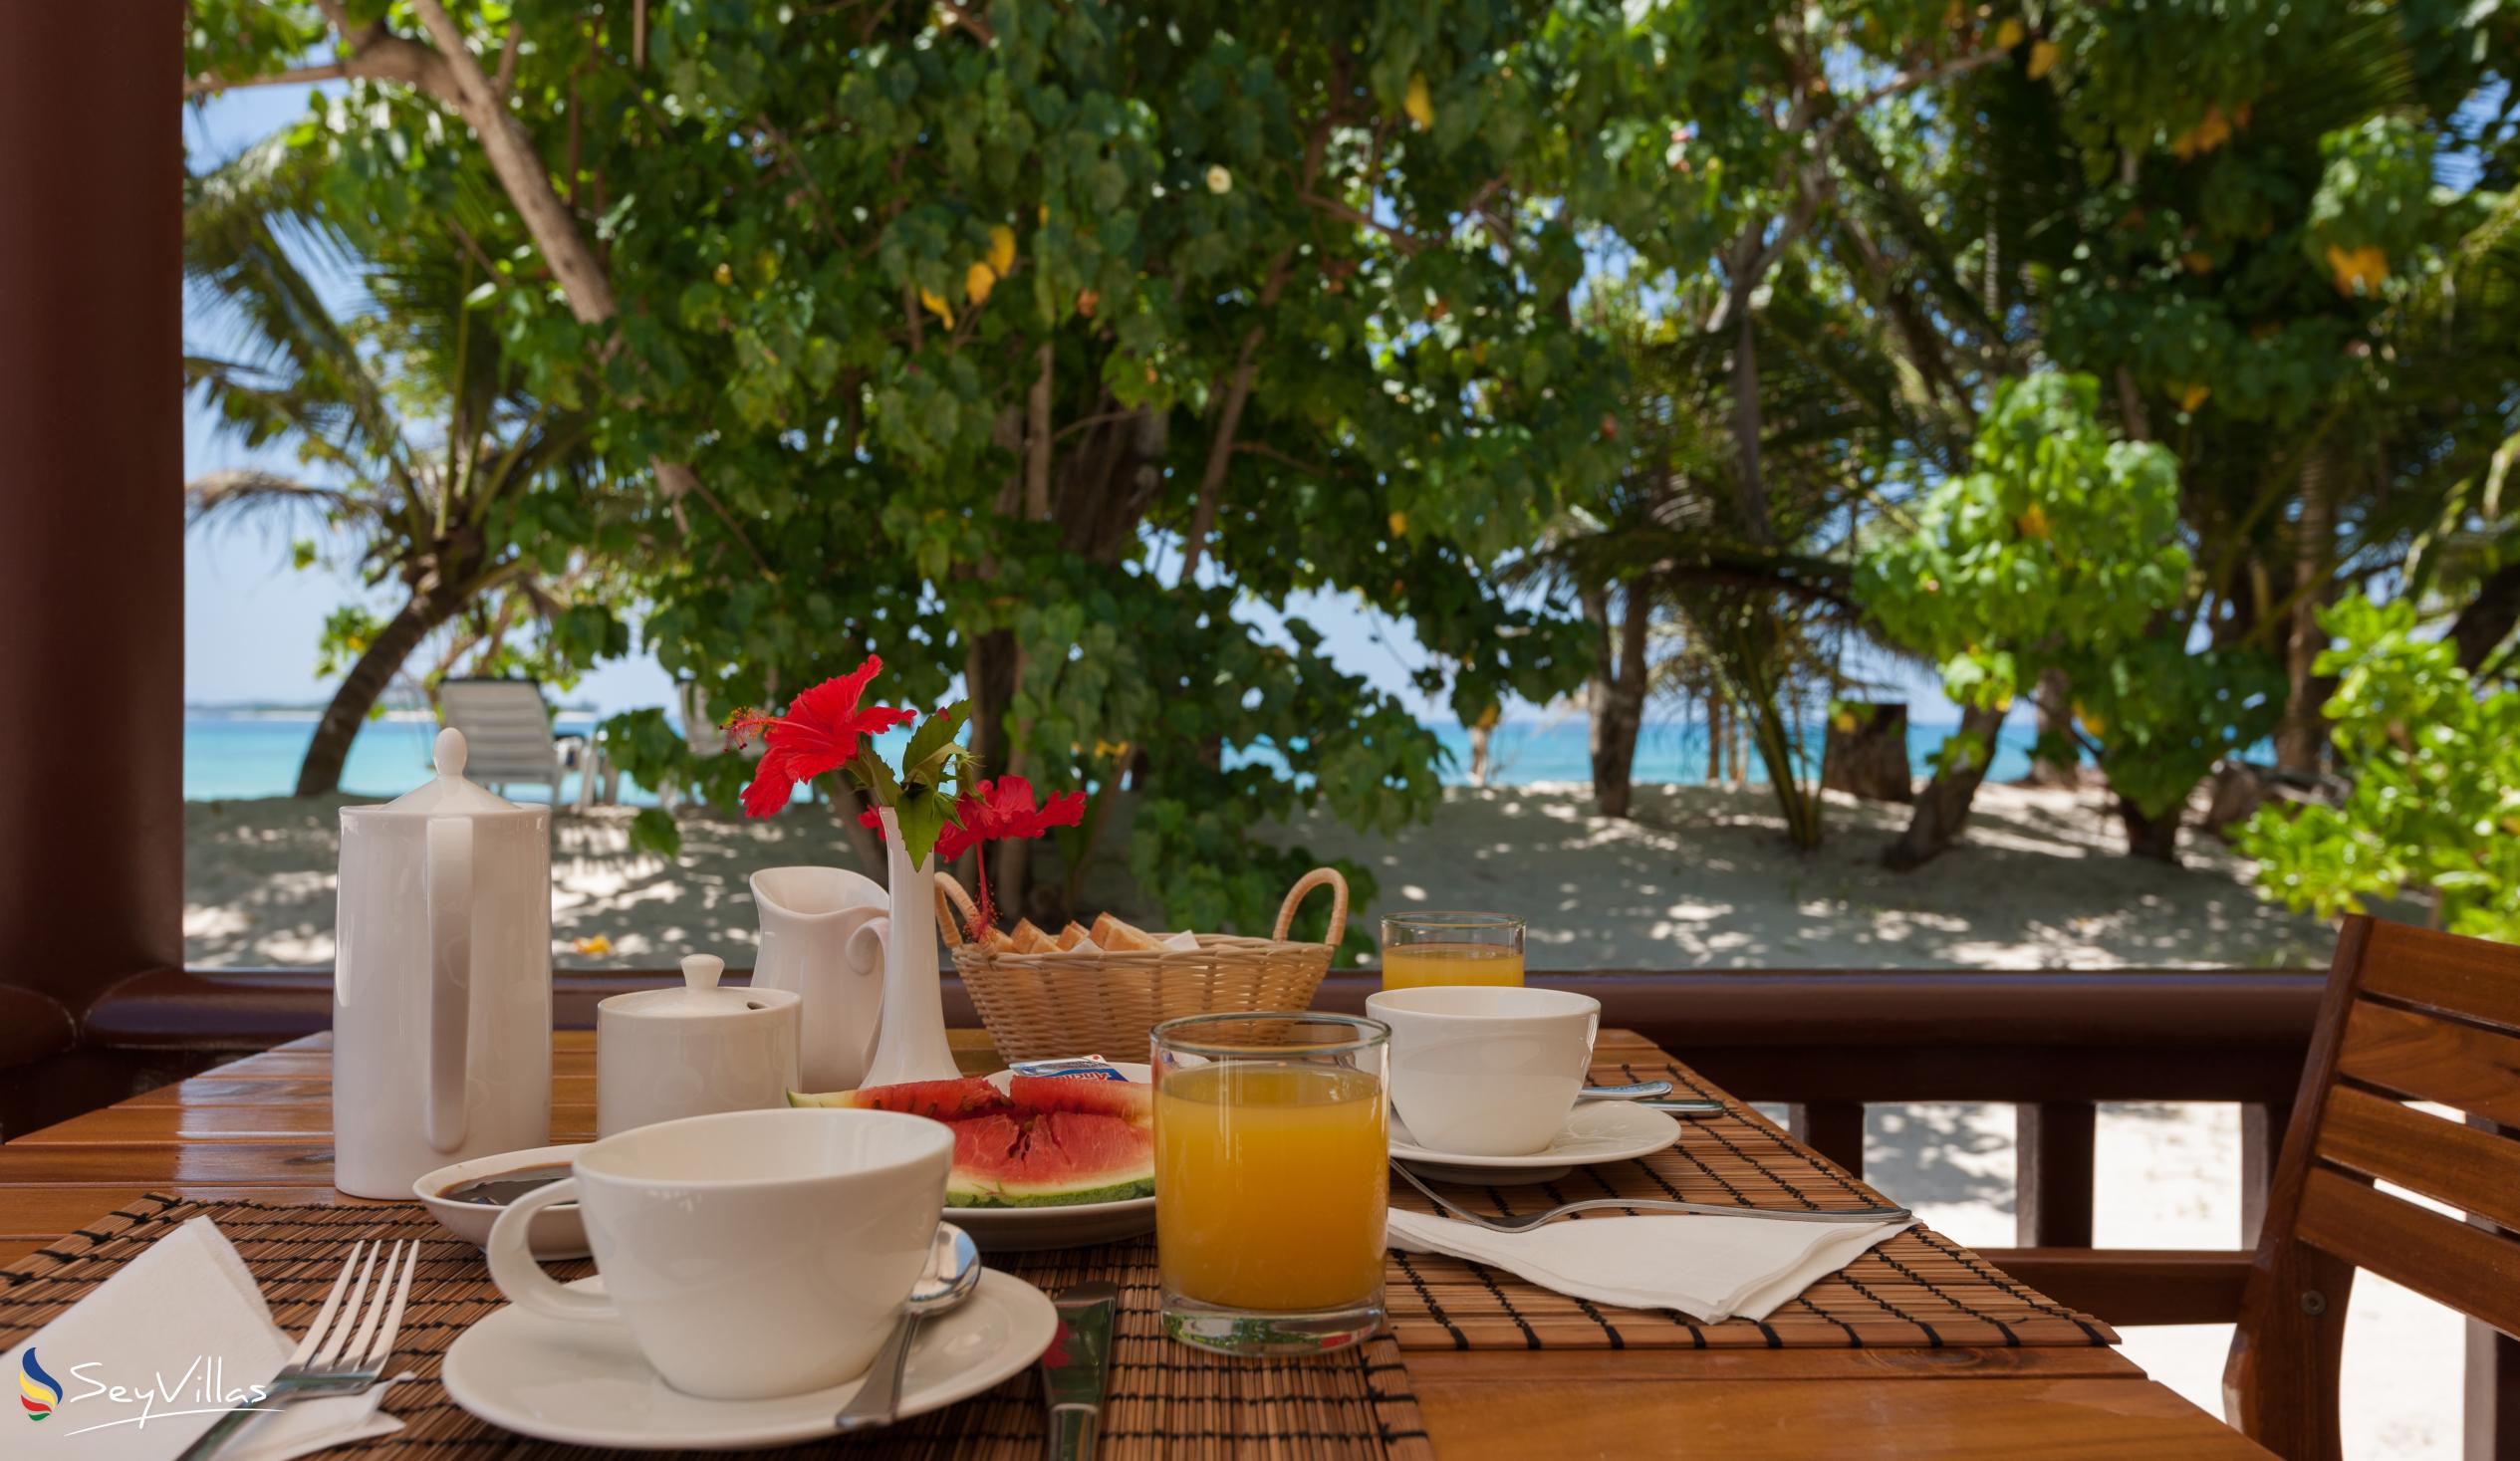 Foto 44: Villa Belle Plage - Villa fronte mare con 1 camera - Praslin (Seychelles)